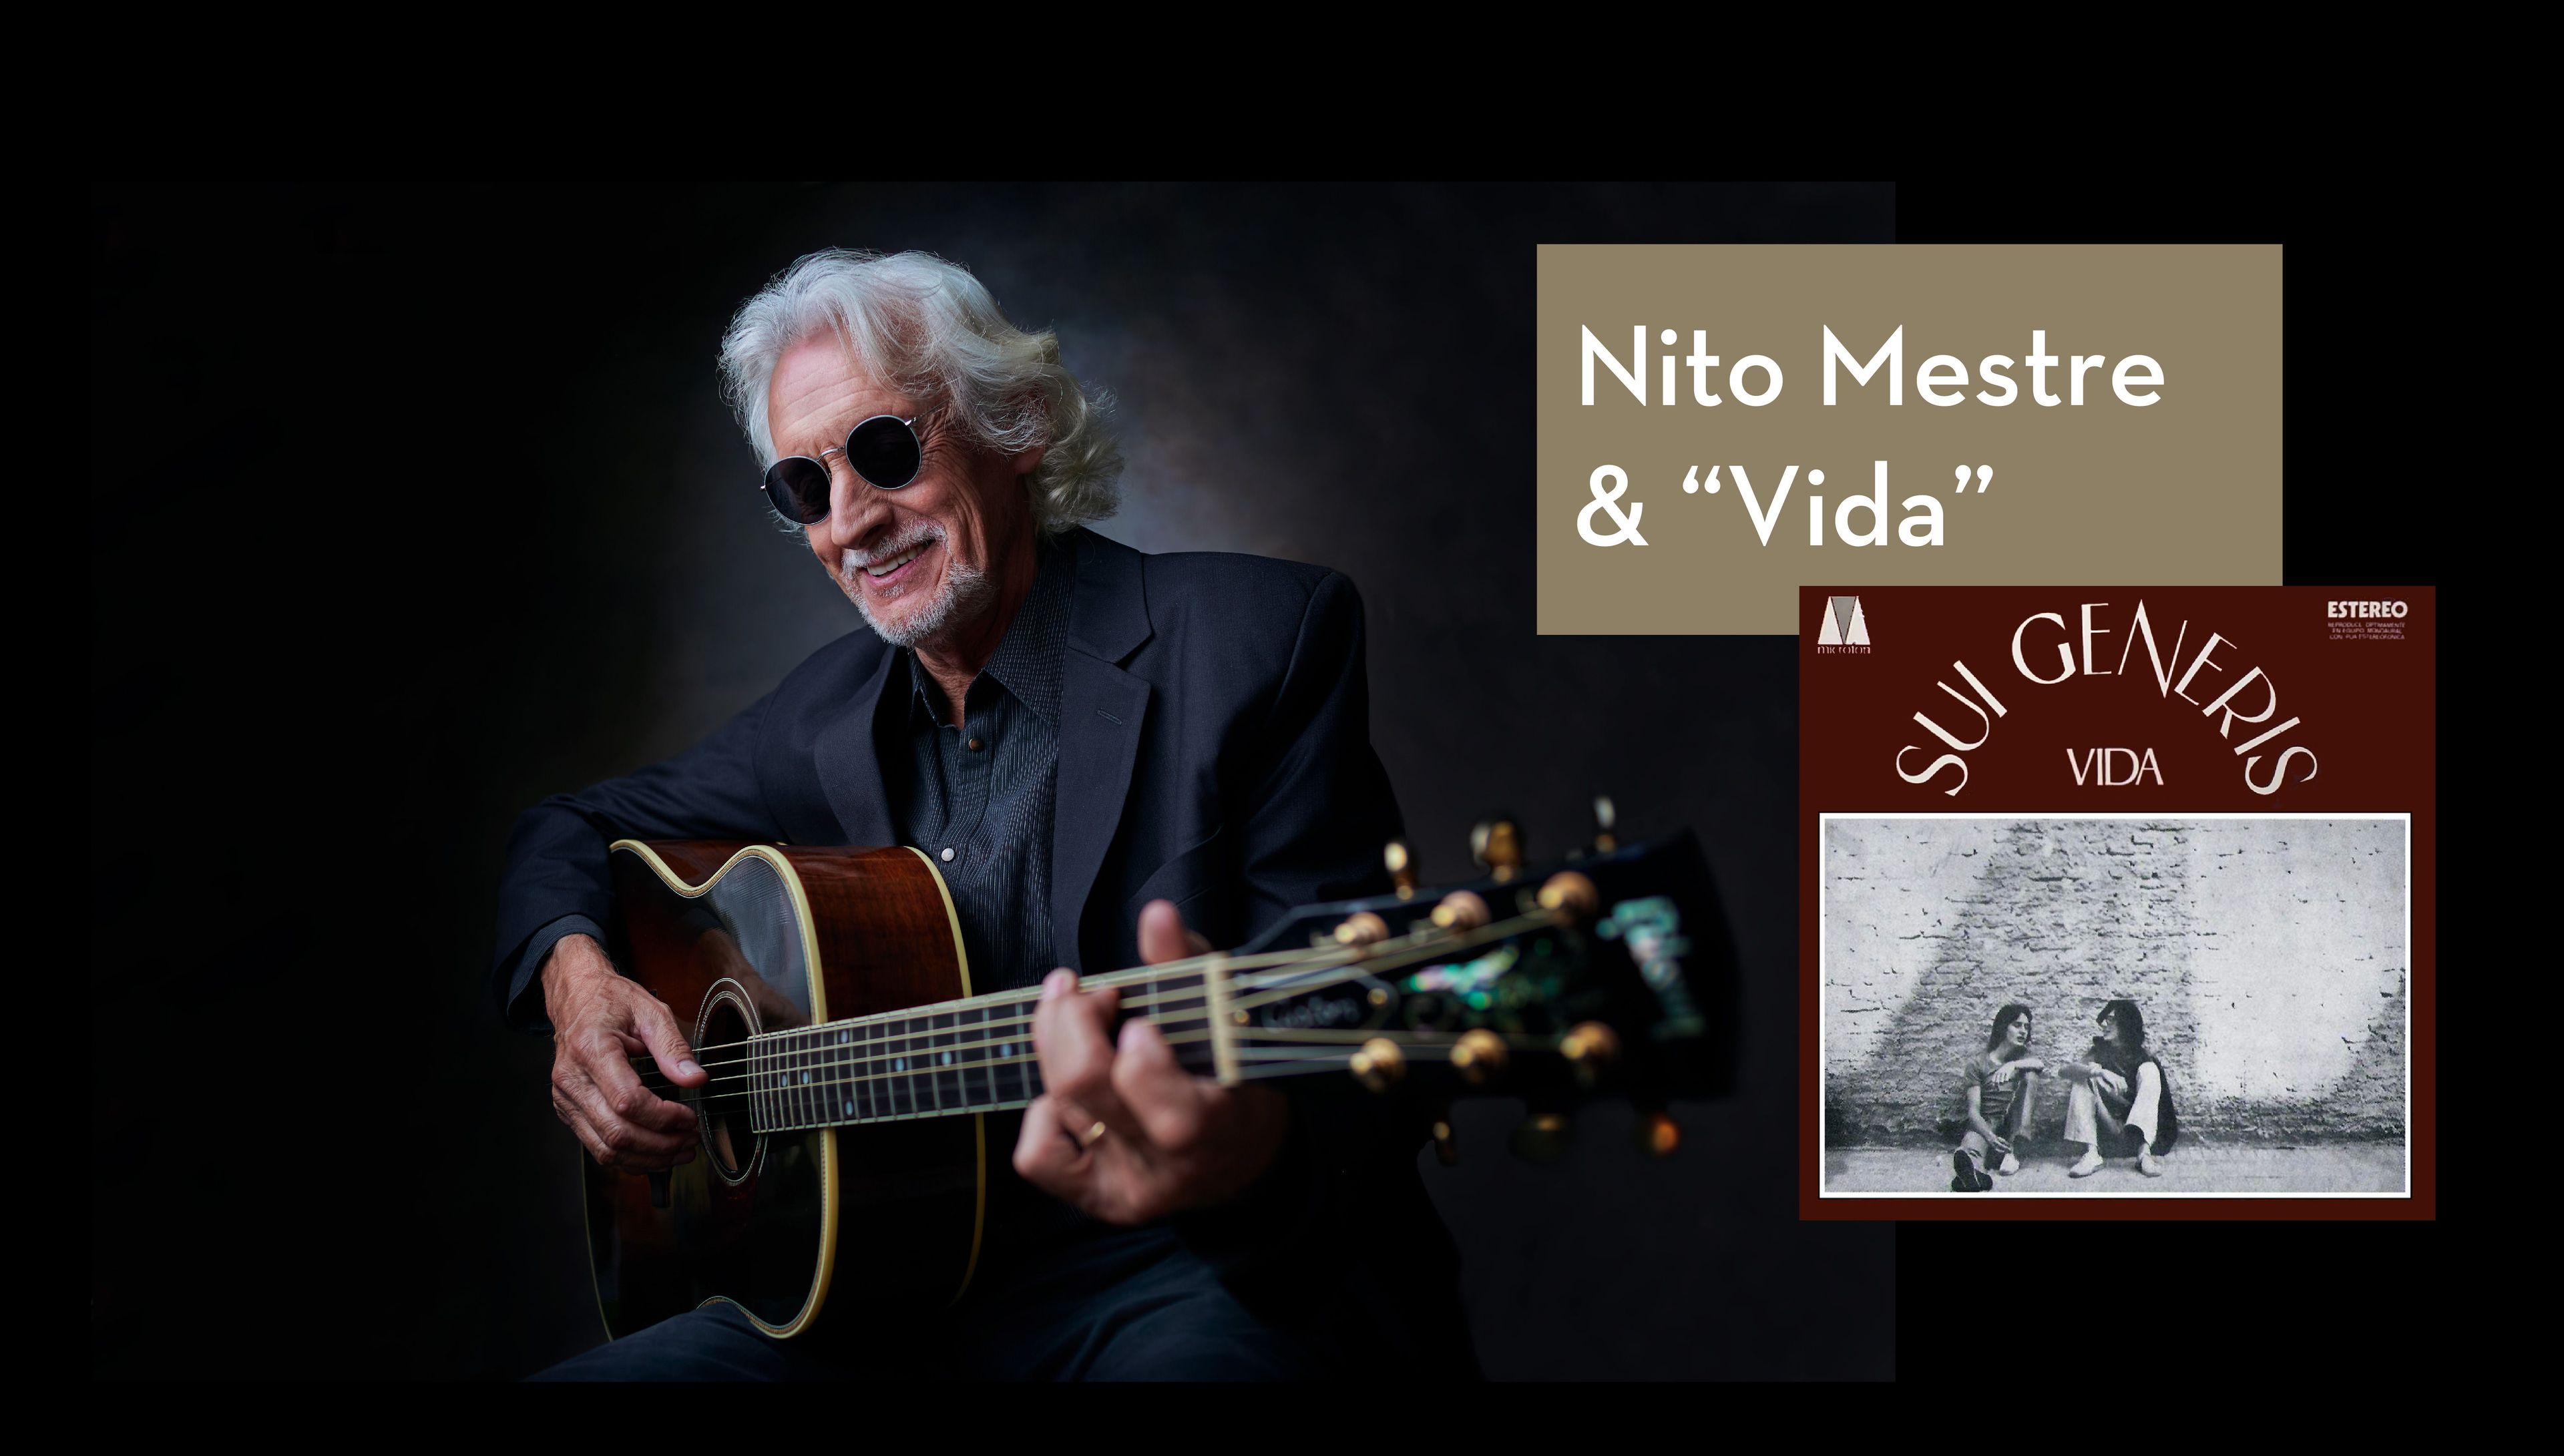 Nito Mestre y "Vida": 50 años de una obra maestra del rock argentino